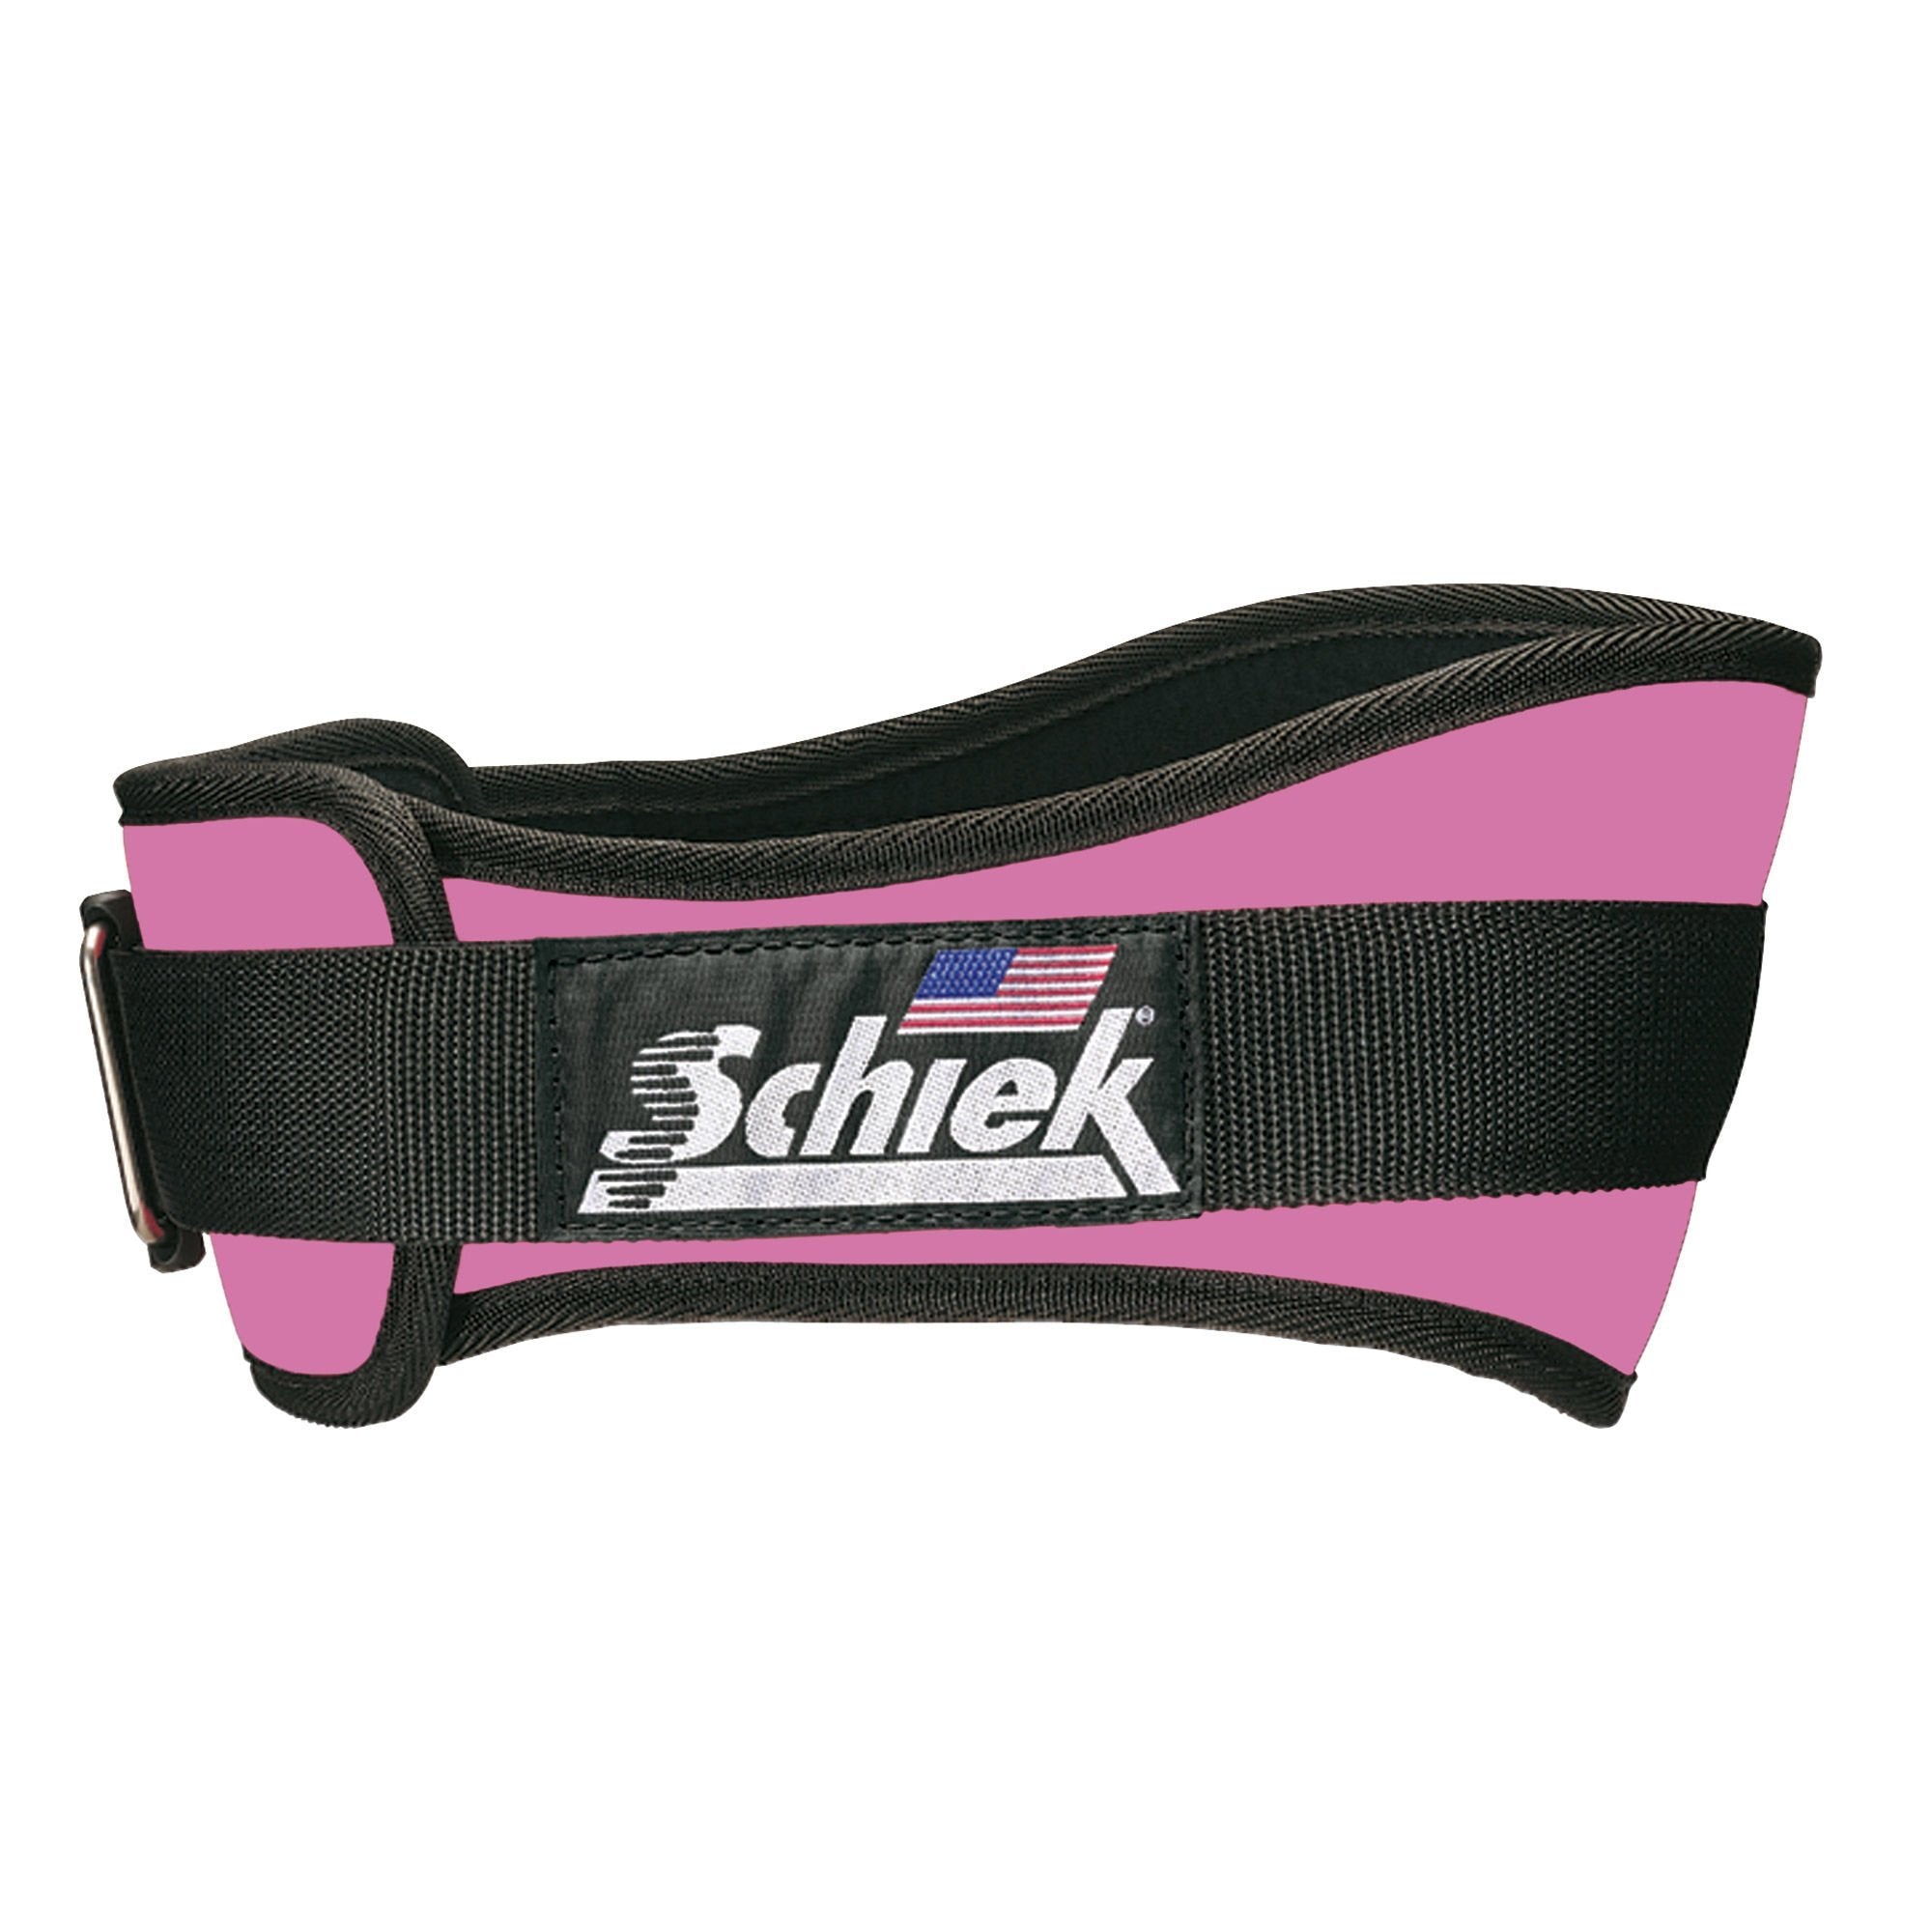 Schiek Training Belt 2004 4 -34 Inch - Pink - Urban Gym Wear